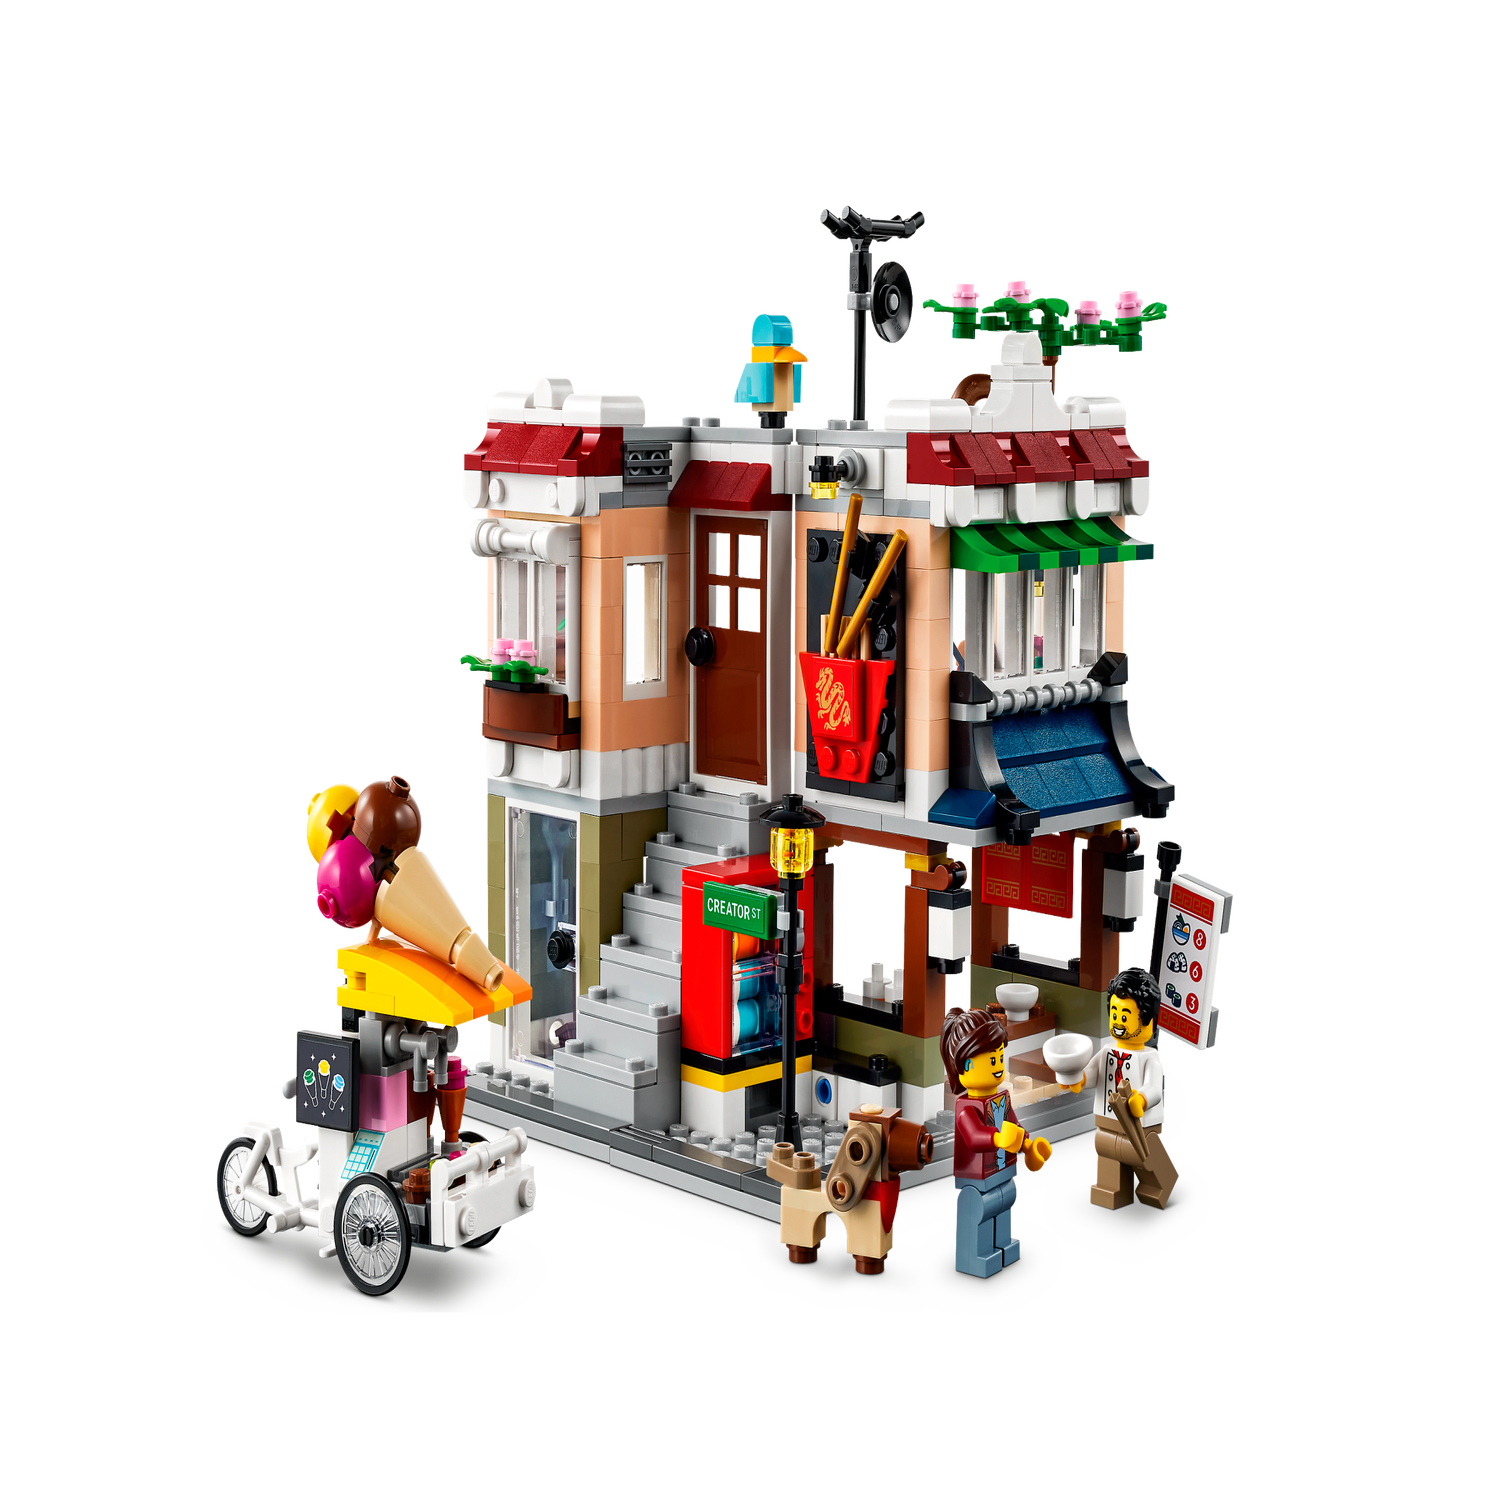 LEGO Creator 31131 - Tienda de fideos 3 en 1, se transforma de tienda de  fideos a tienda de bicicletas a arcade, juego de construcción modular,  regalo